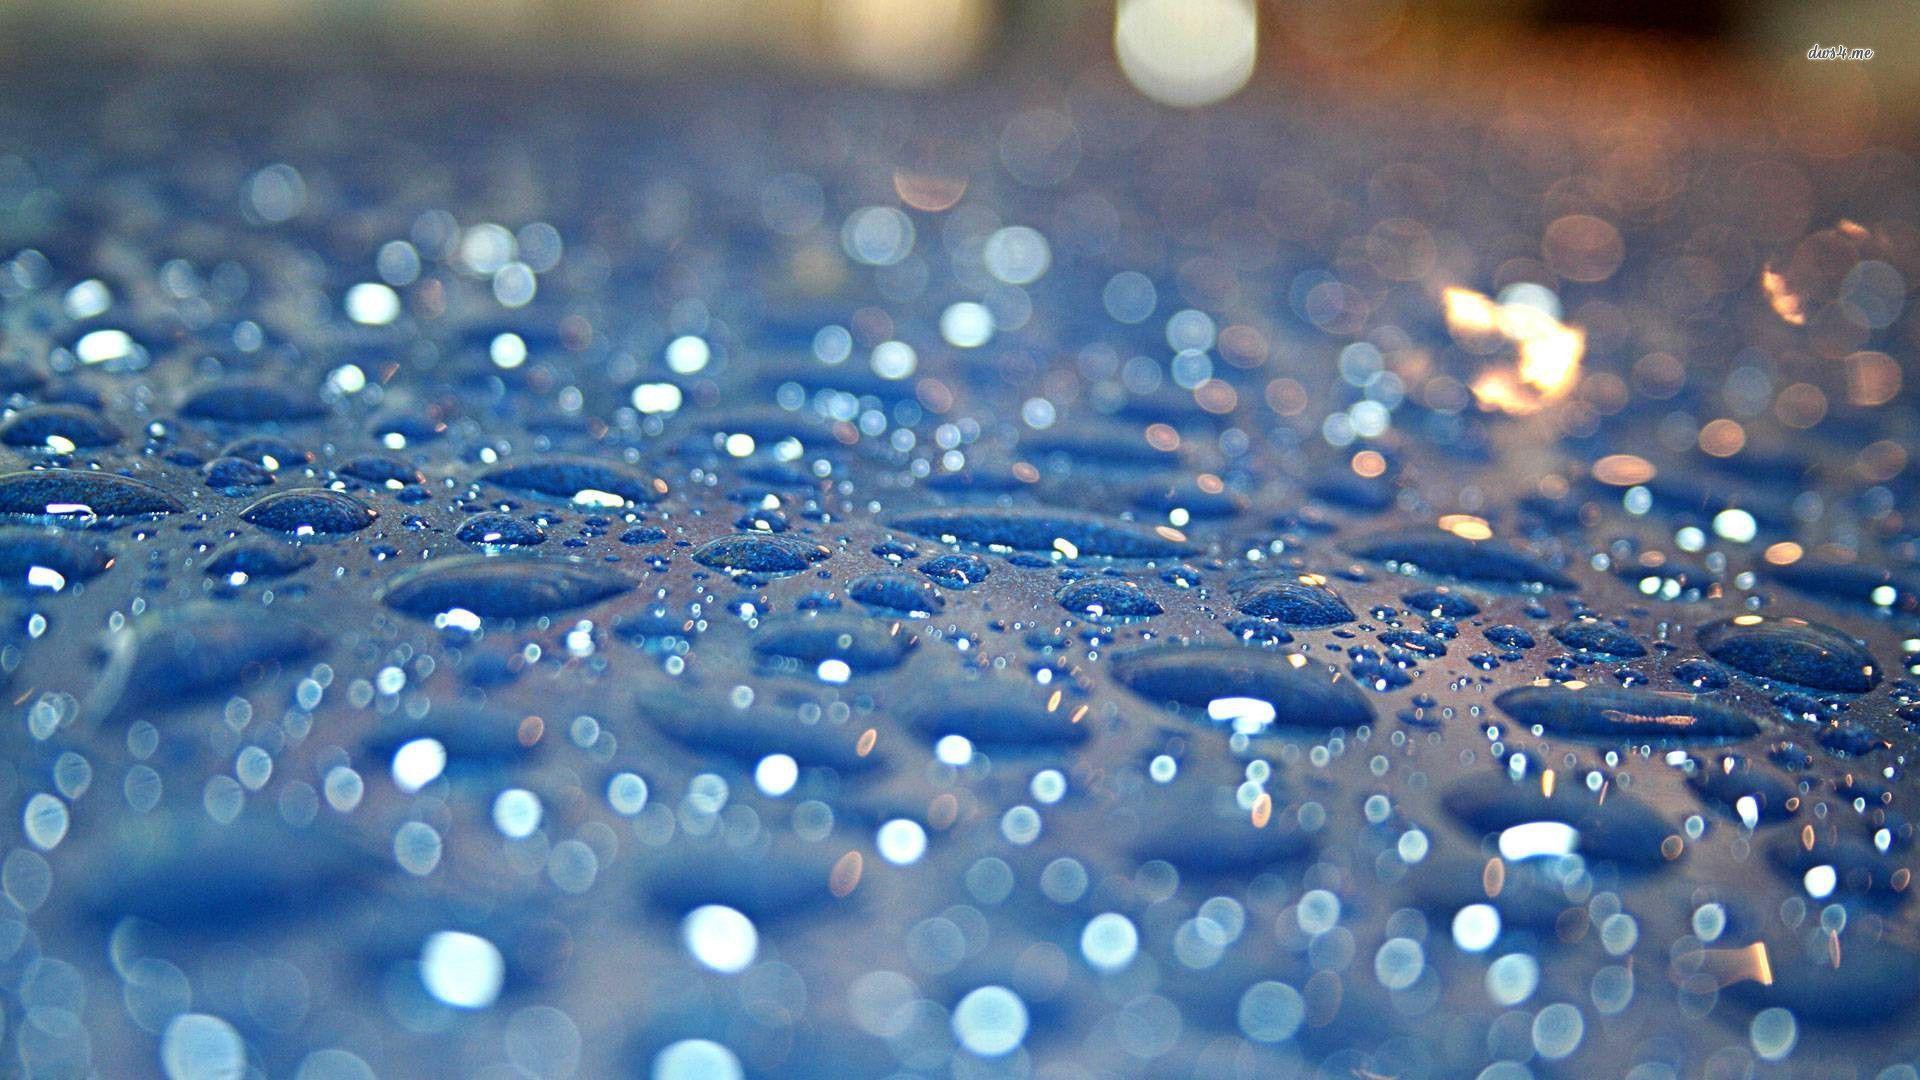 IOS Rain Drops Wallpaper HD By Airplane 1600